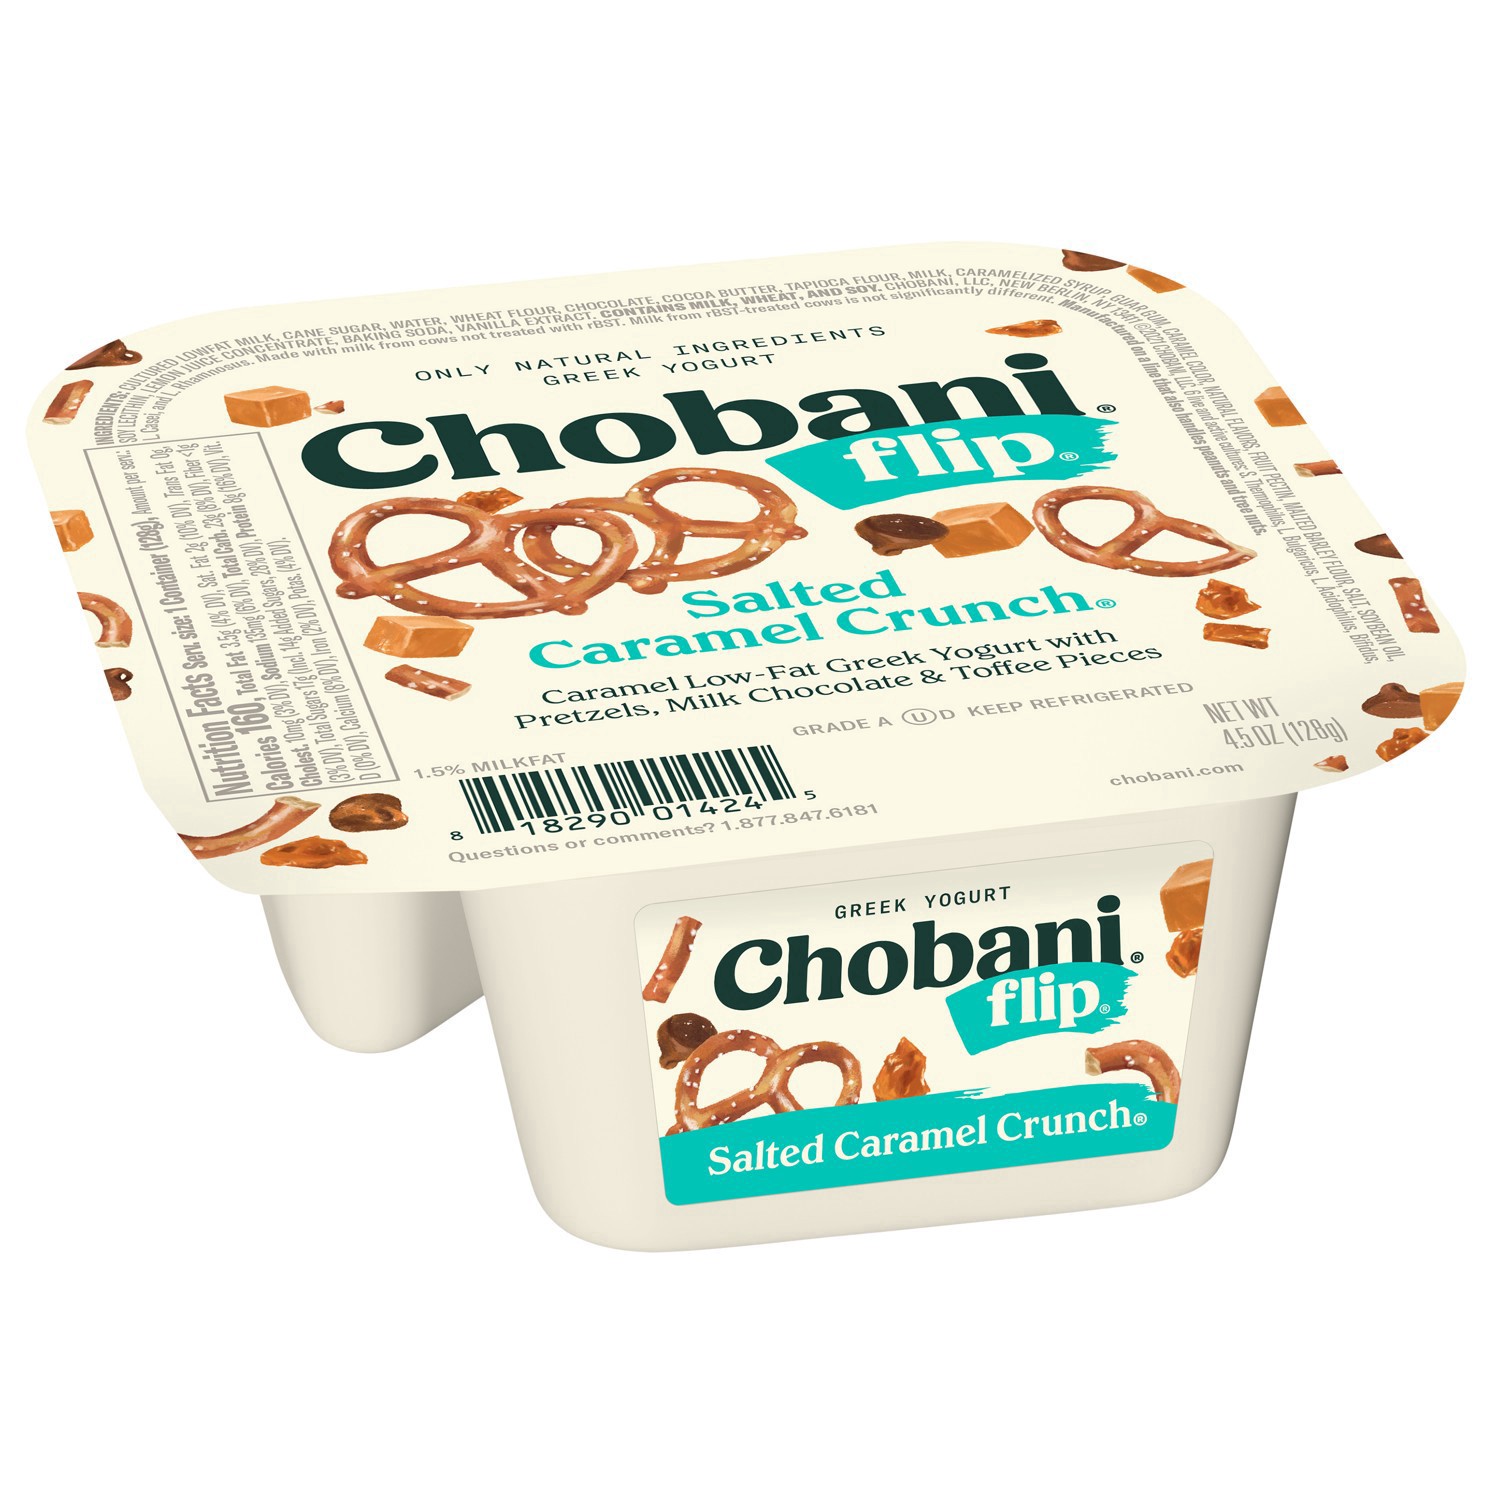 slide 10 of 69, Chobani Flip Low-Fat Salted Caramel, Chocolate and Toffee Crunch Greek Yogurt - 4.5oz, 5.3 oz